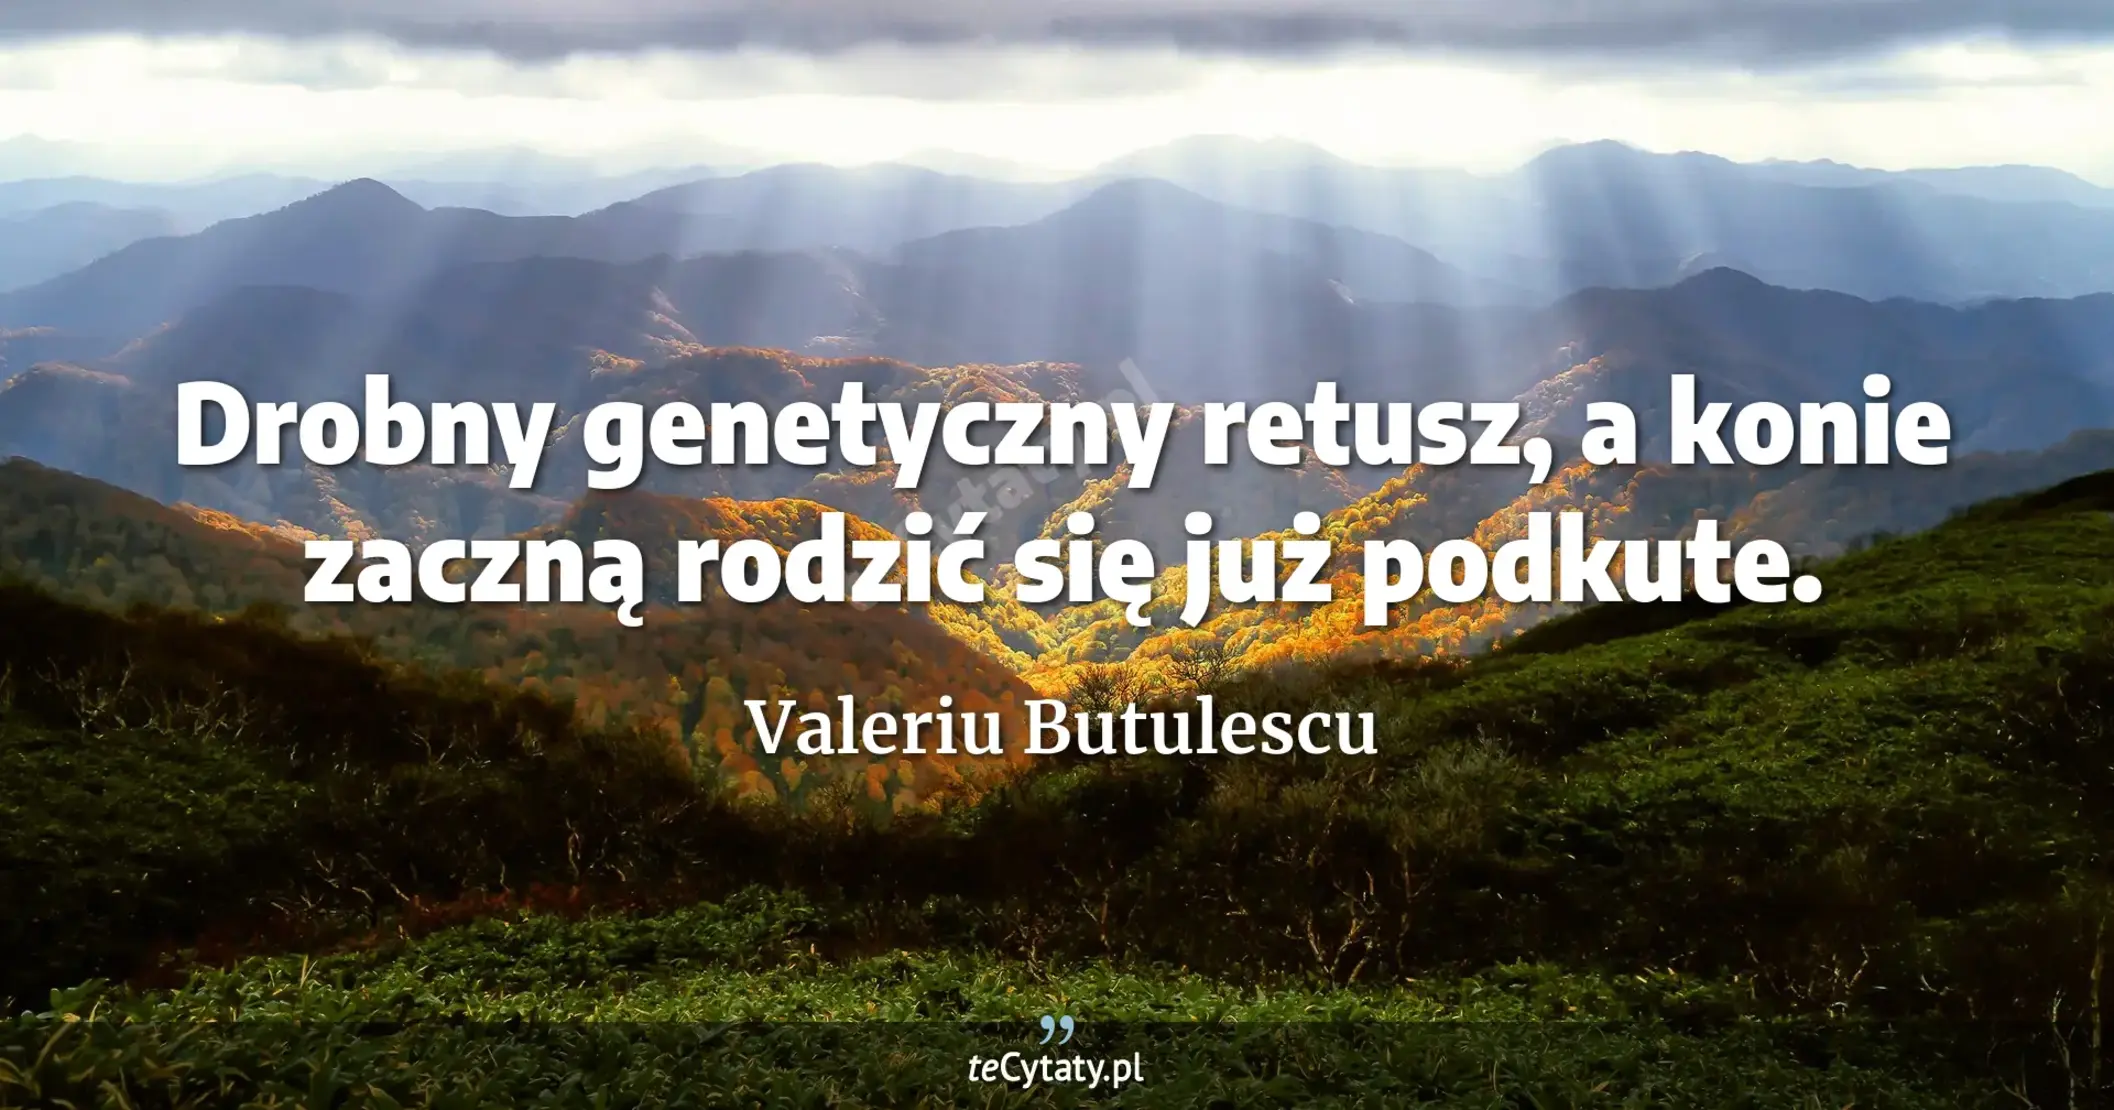 Drobny genetyczny retusz, a konie zaczną rodzić się już podkute. - Valeriu Butulescu